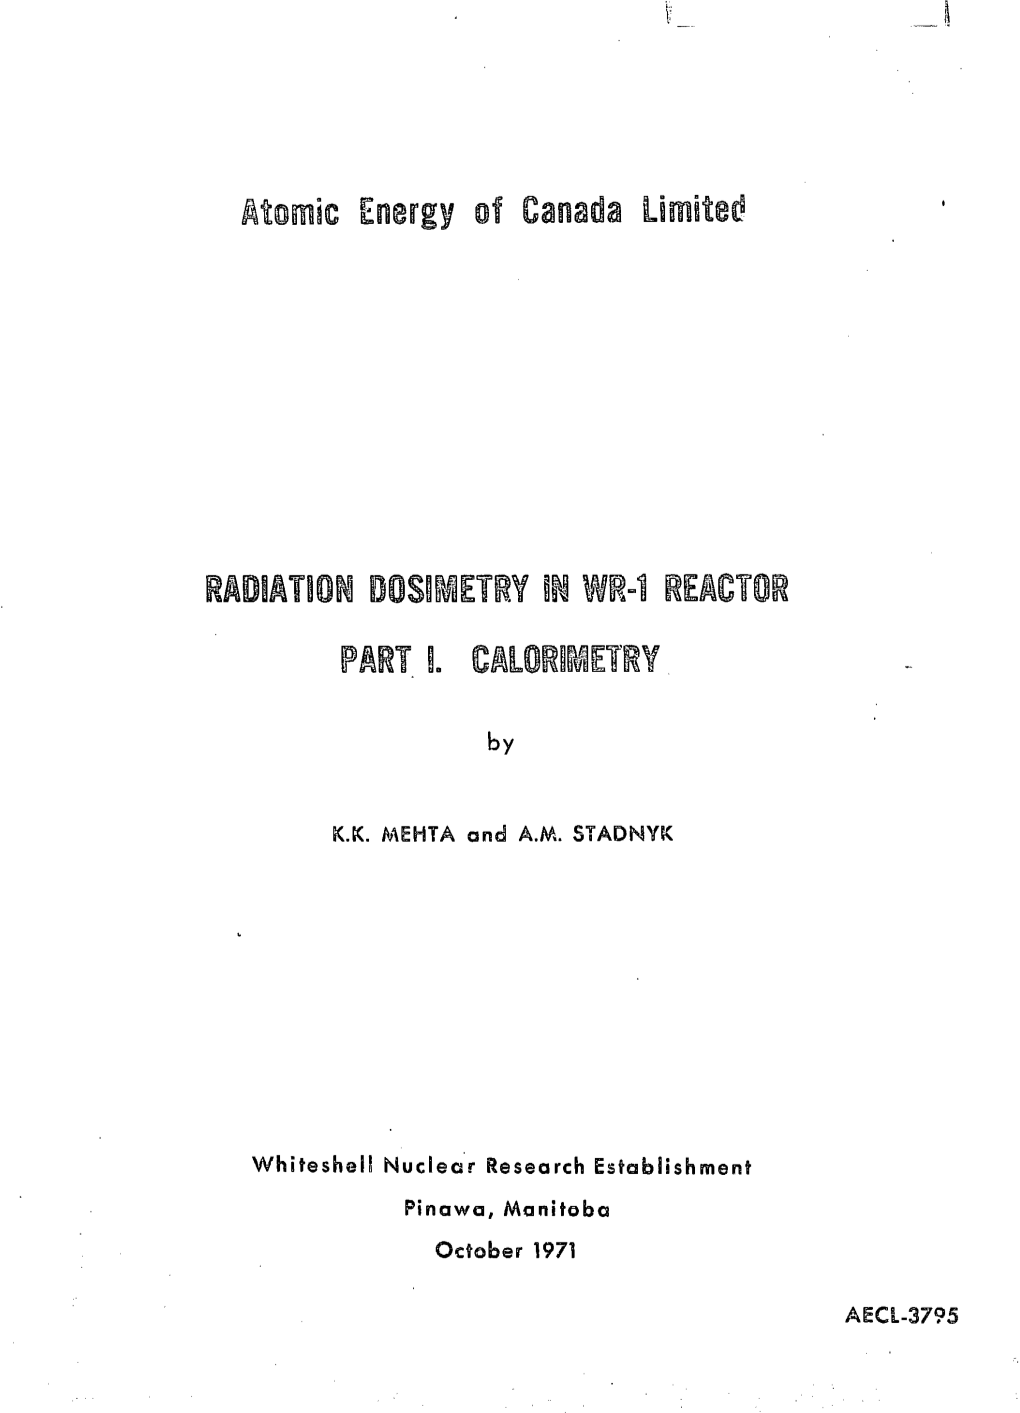 Nuclecr Research Establishment Pinawa, Manitoba October 1971